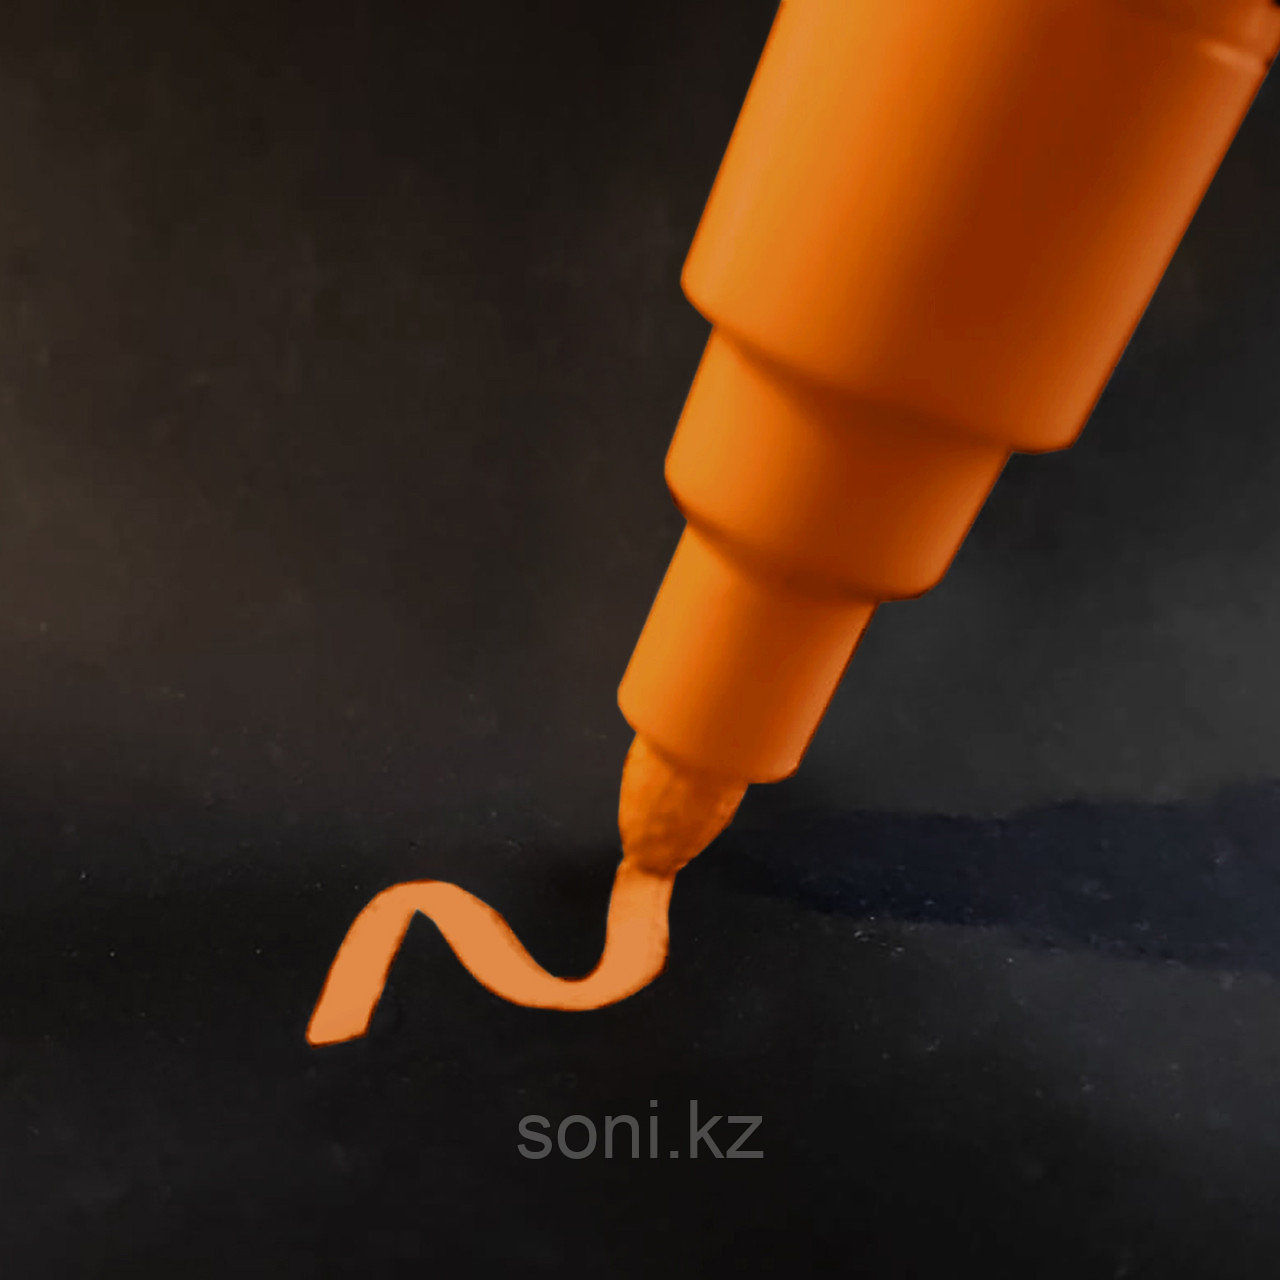 Меловой маркер оранжевый 5мм / Борлы маркер қызғылт сары 5мм